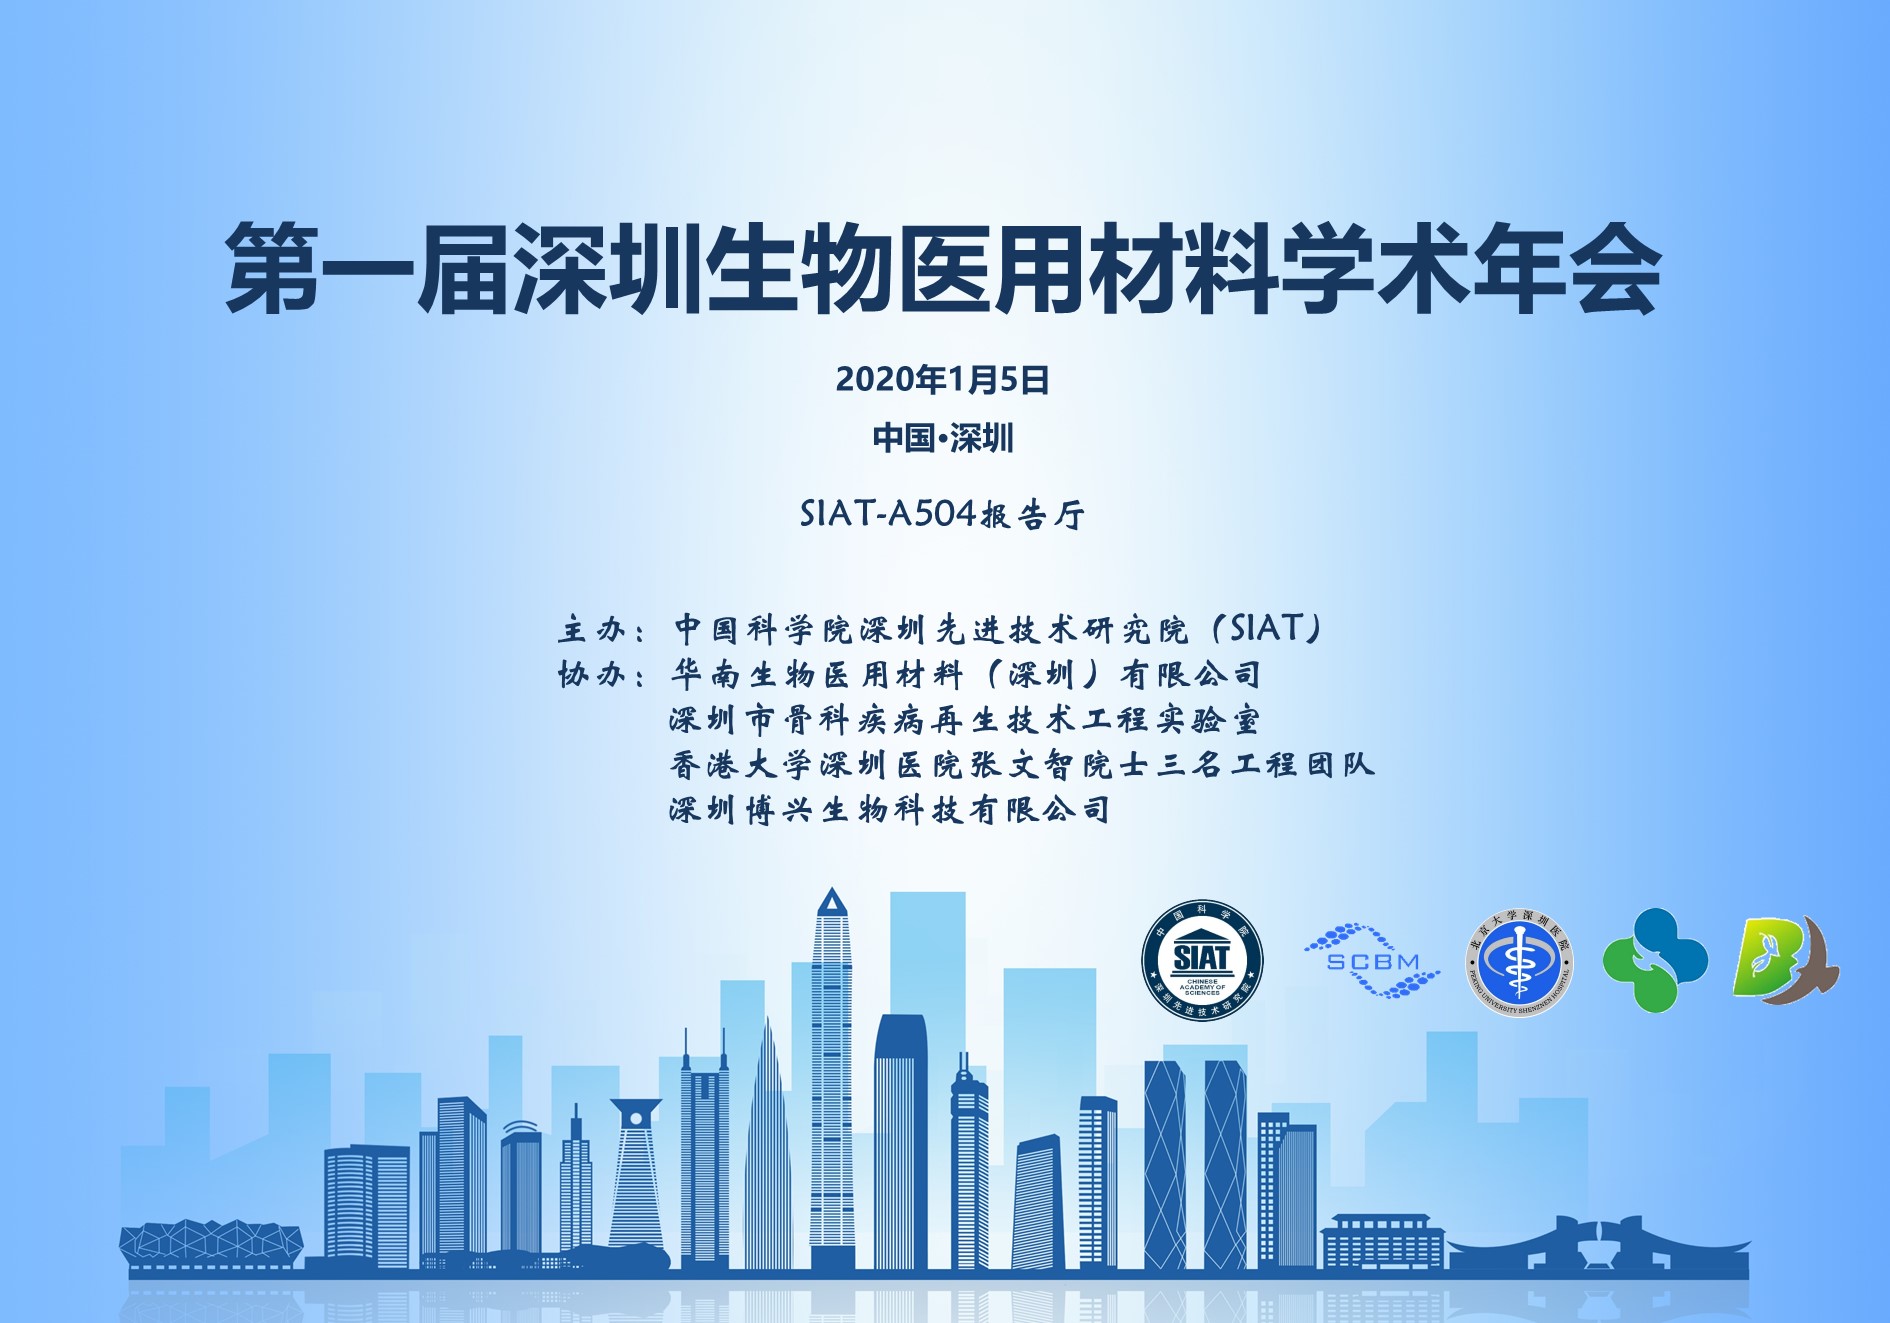 第一届深圳生物医用材料学术年会将于2020年1月5日于先进院A504报告厅召开